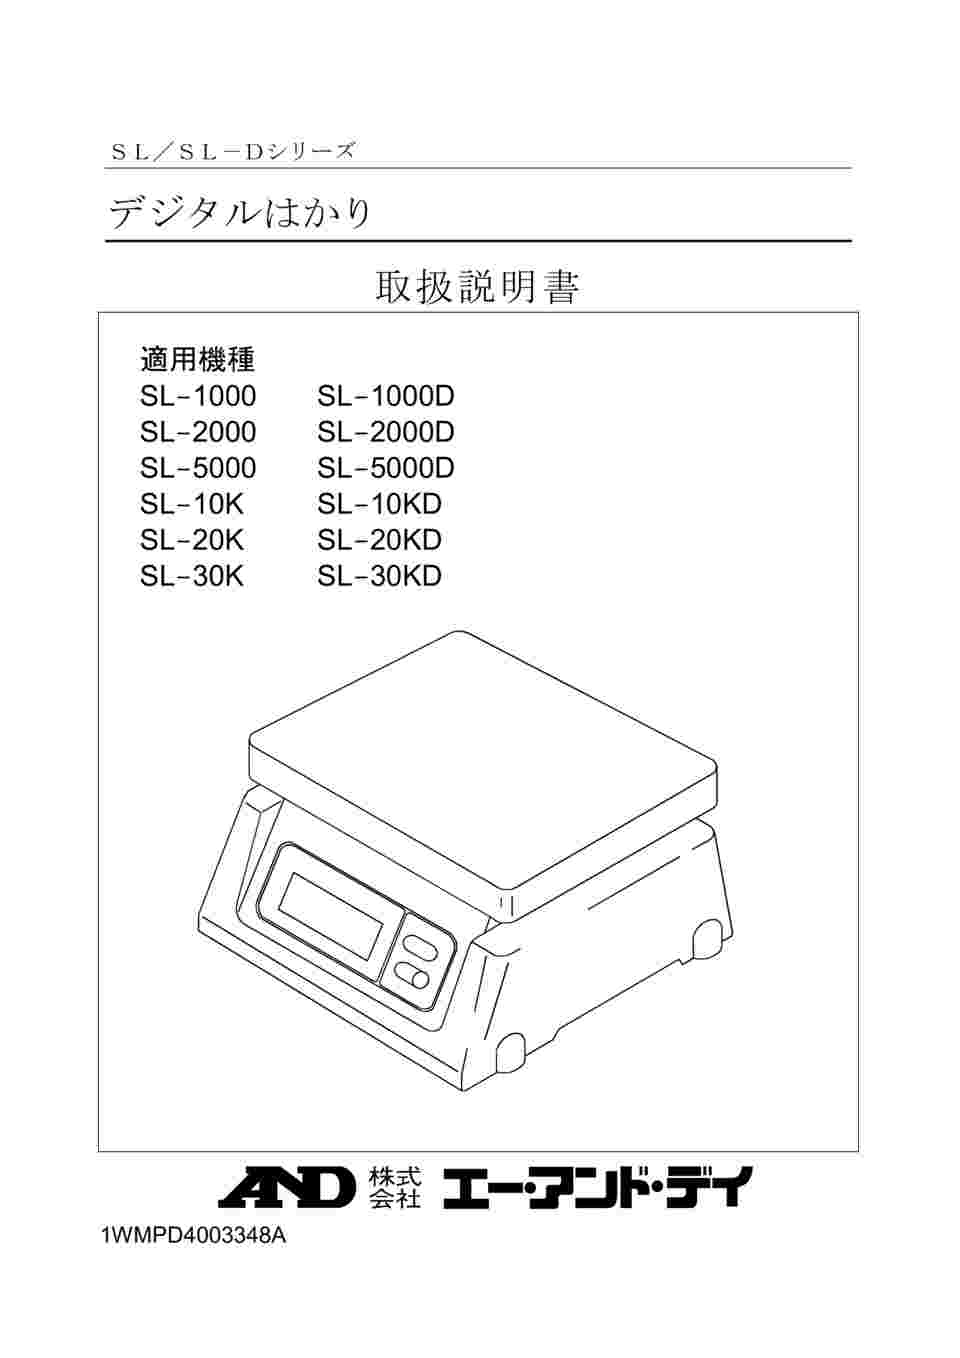 AD デジタル両面表示はかり SL-5000D ≪ひょう量:5000g 最小表示:2g 皿寸法:230(W)*190(D)mm 検定無≫ - 2